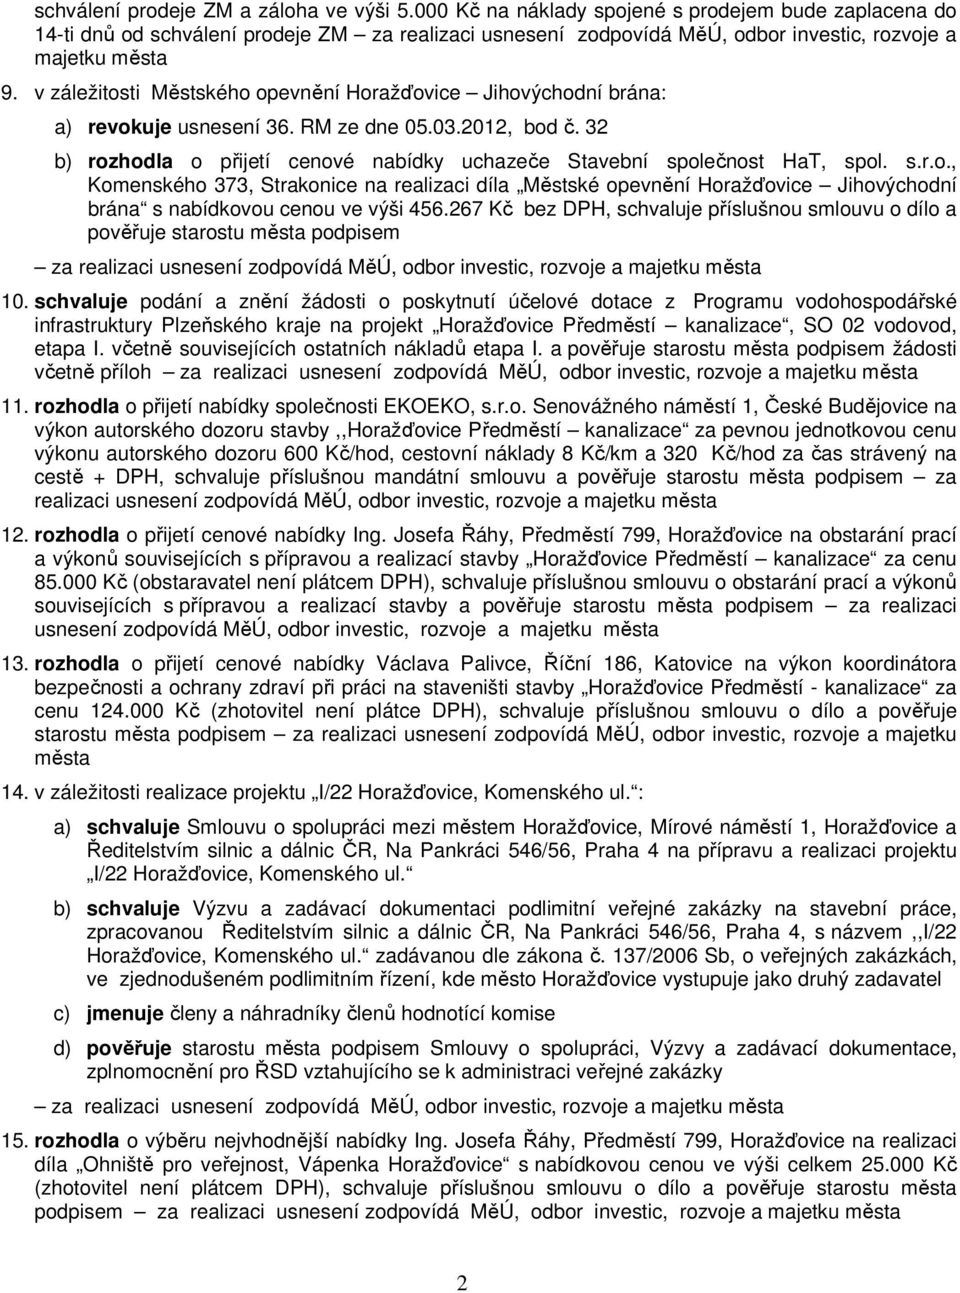 v záležitosti Městského opevnění Horažďovice Jihovýchodní brána: a) revokuje usnesení 36. RM ze dne 05.03.2012, bod č. 32 b) rozhodla o přijetí cenové nabídky uchazeče Stavební společnost HaT, spol.